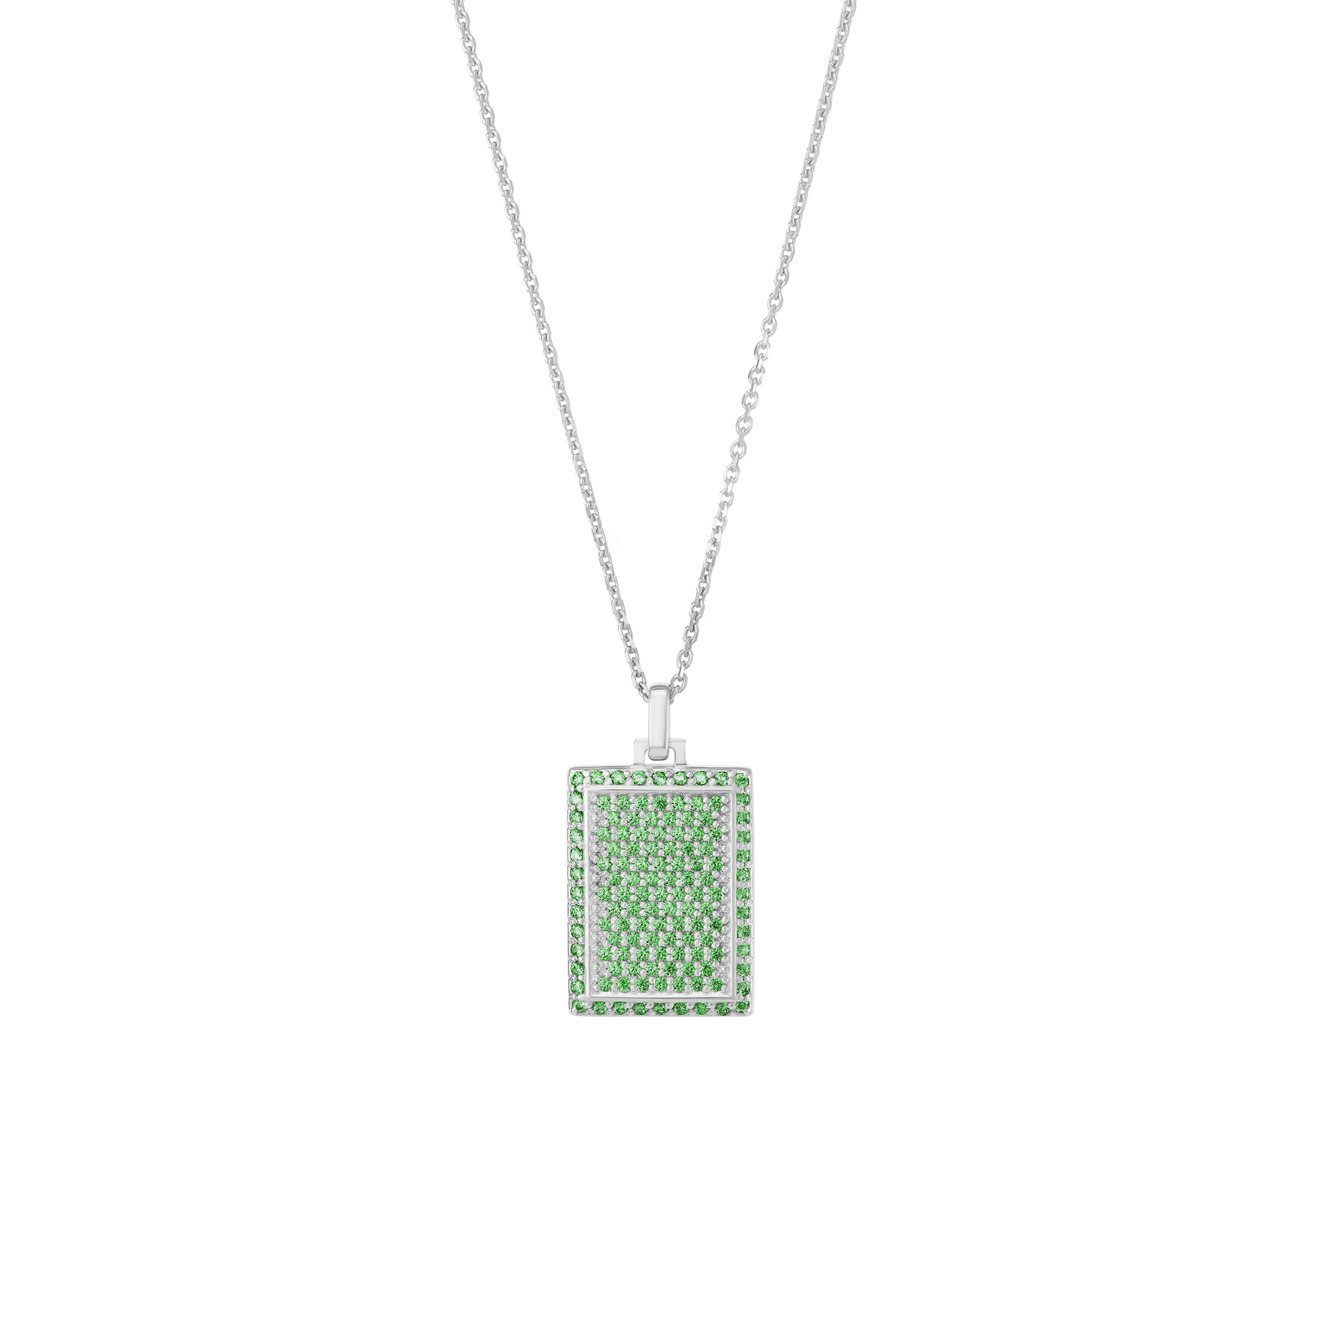 Jewlia Прямоугольный медальон из серебра с зелеными кристаллами jewlia коллаборация chandon x poison drop позолоченный медальон chandon из серебра с звездой